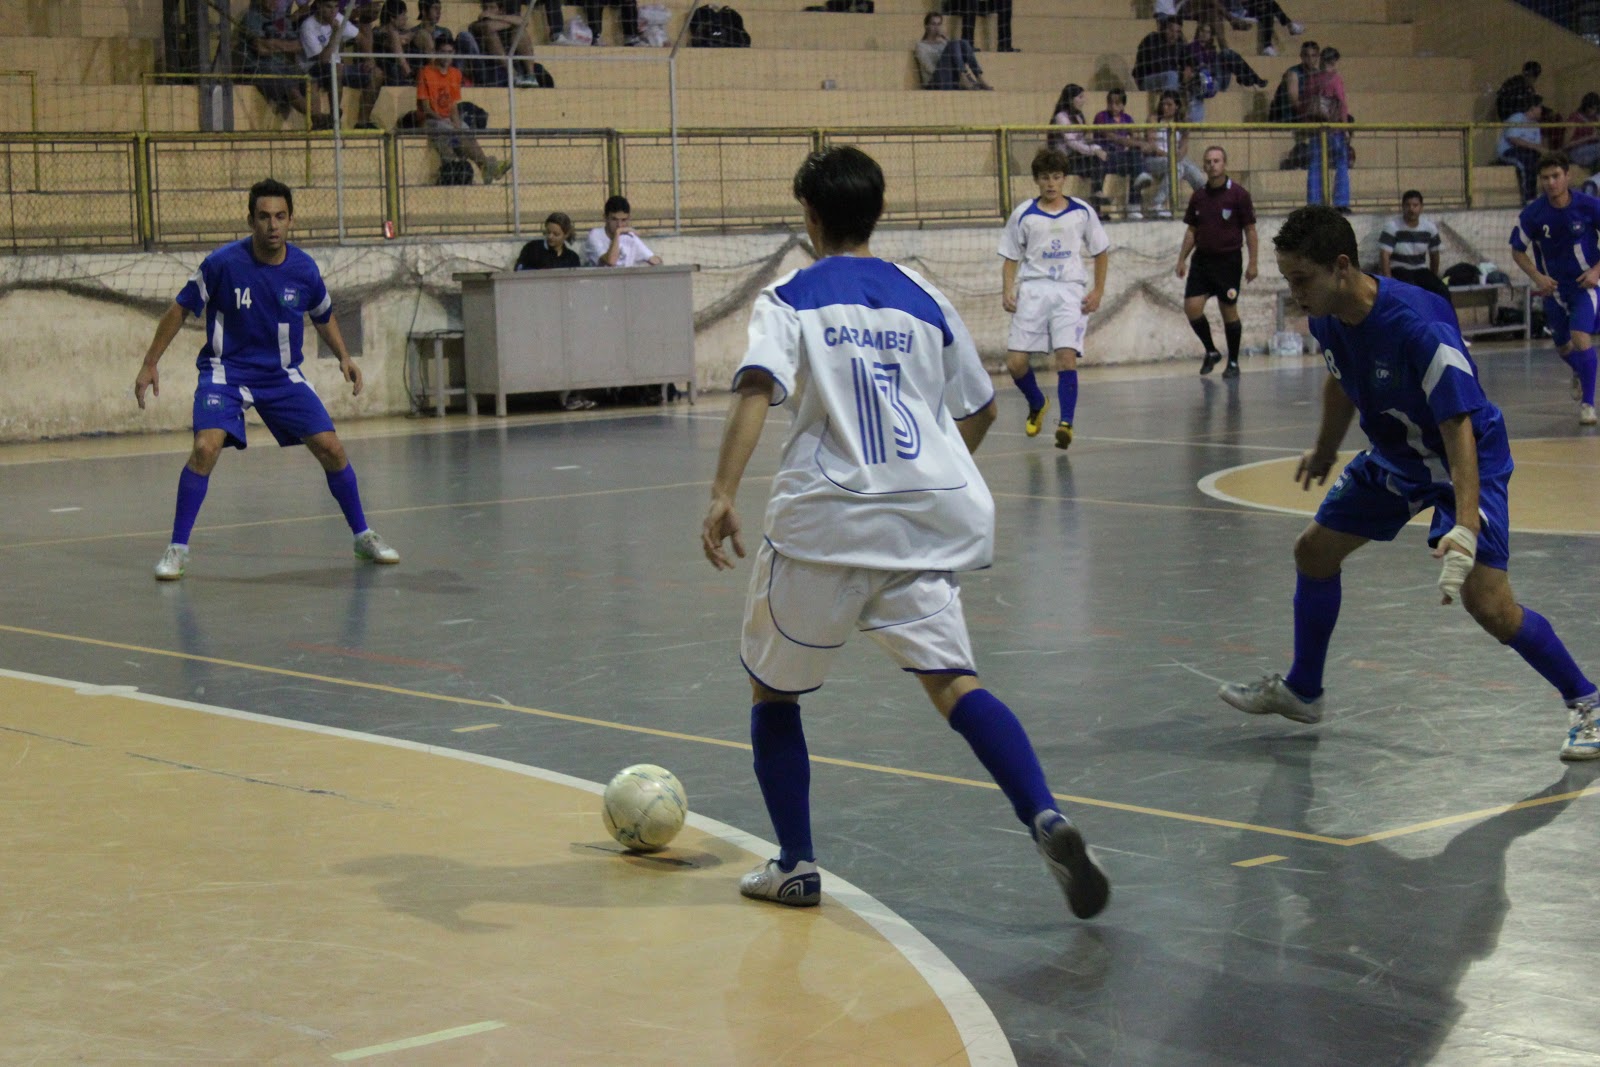 Semifinais da Liga G8 de Futsal ocorrem nesta quinta-feira, 23, em